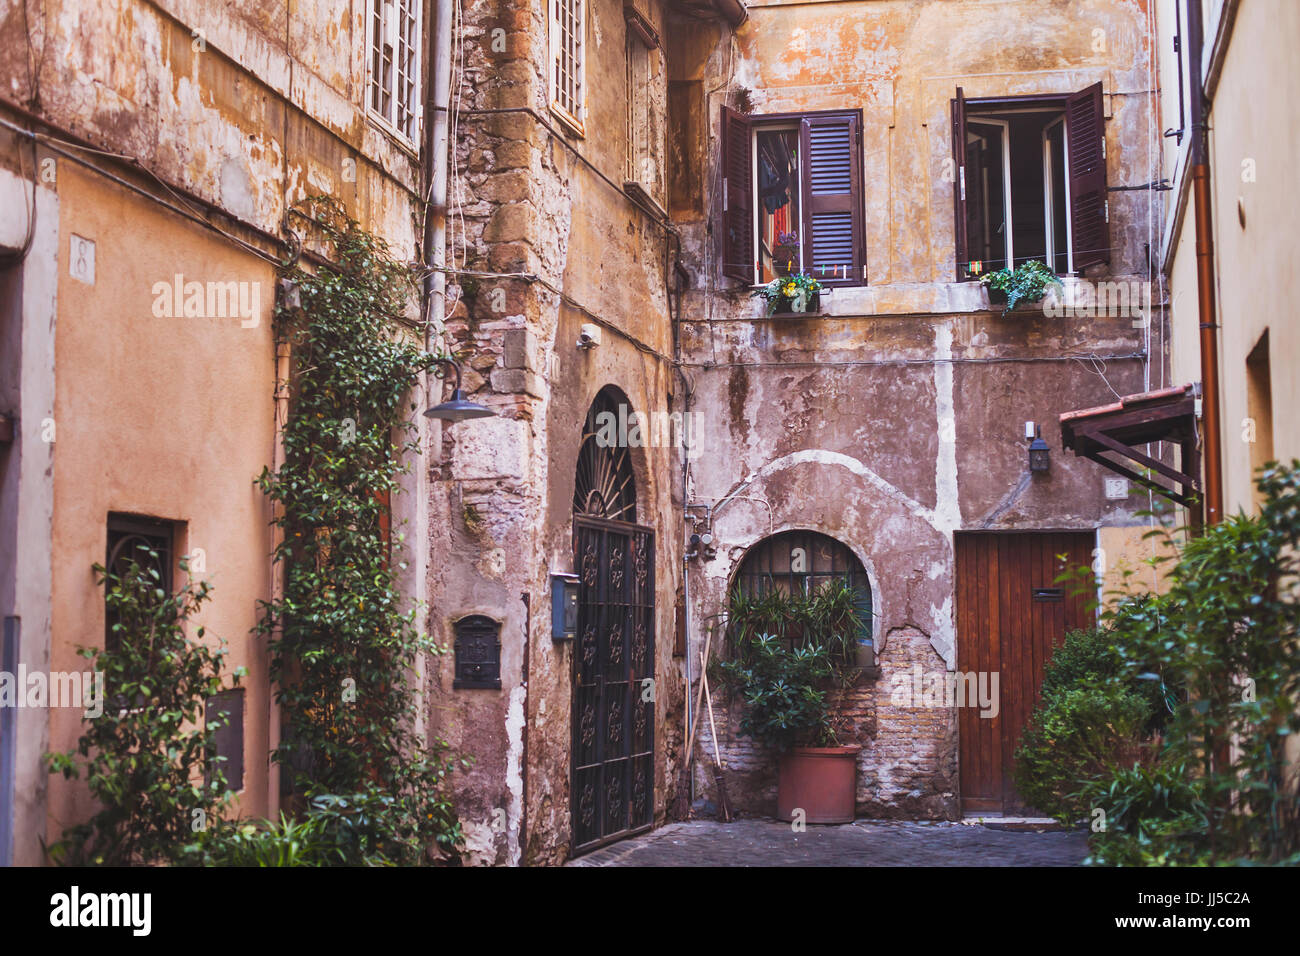 Reisen Sie nach Rom, gemütliche europäischer Hof, Straße in Italien Stockfoto